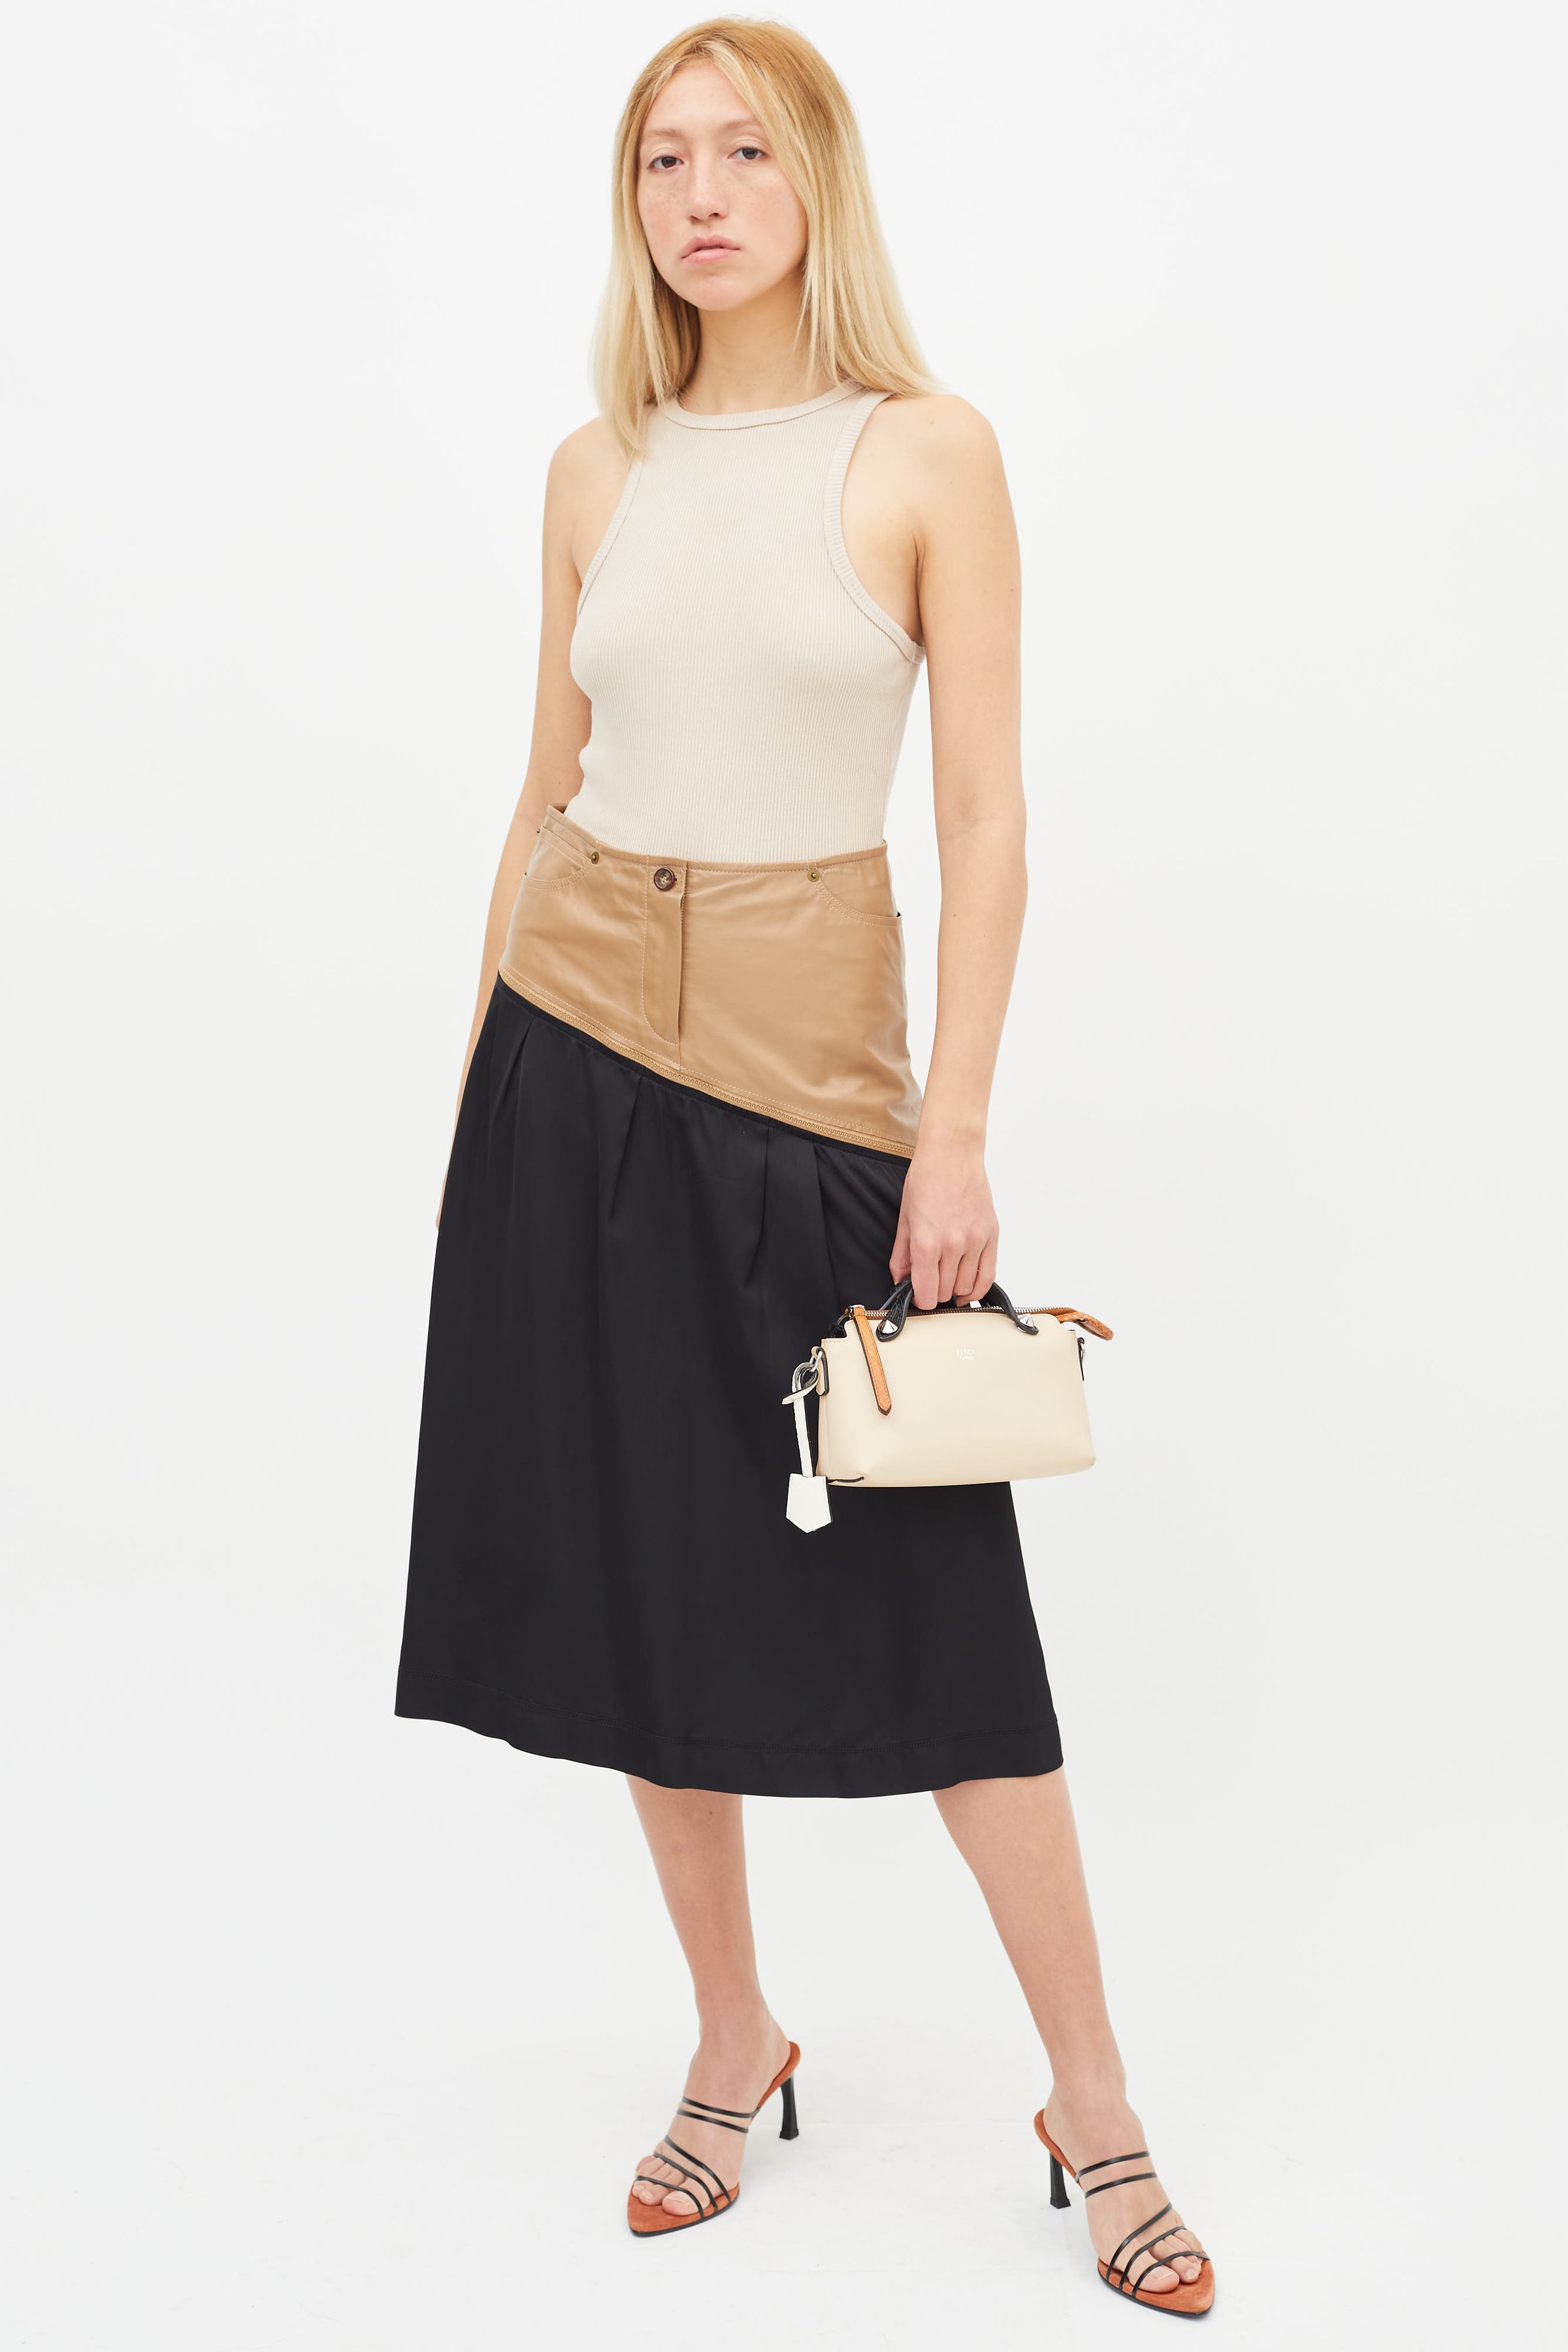 Fendi 'By The Way Boston Mini' shoulder bag, Women's Bags